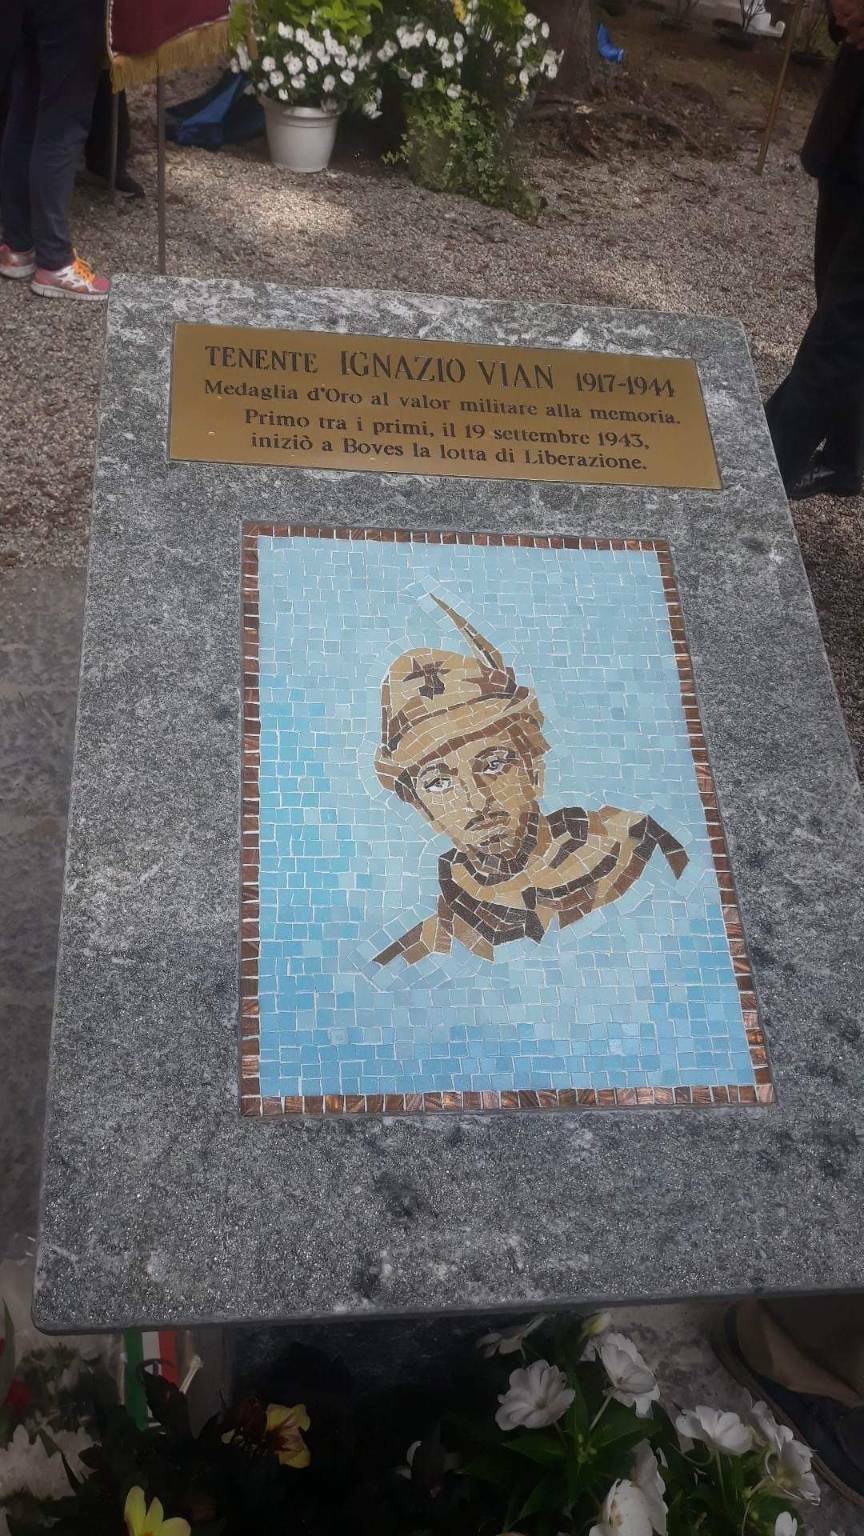 Un cippo dedicato a Ignazio Vian lega Boves e Torino